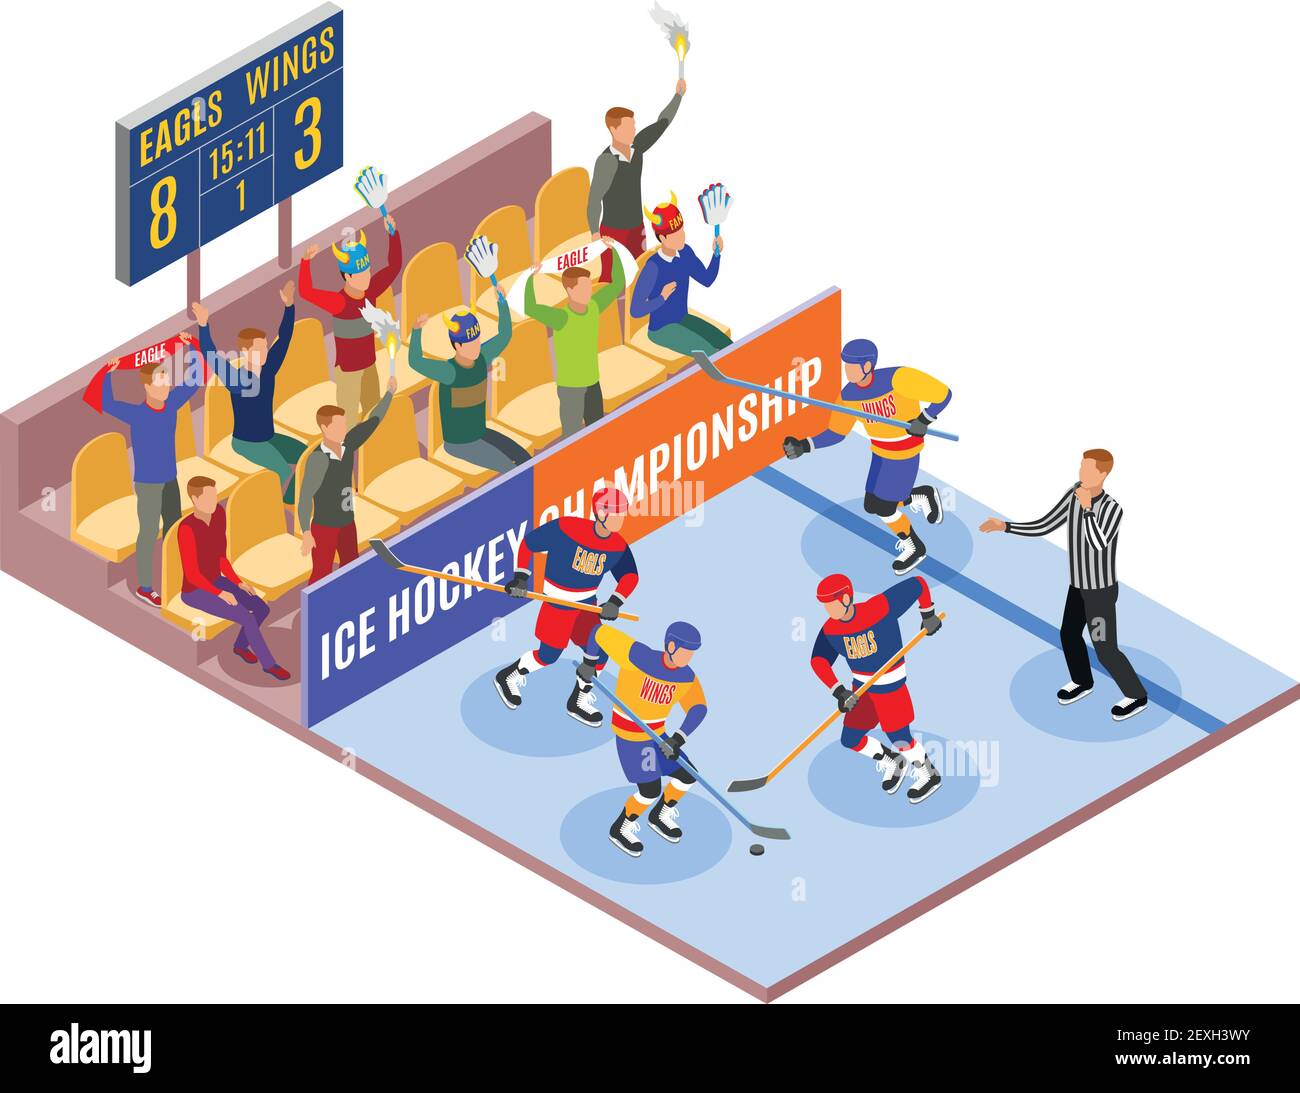 Wintersport isometrische Zusammensetzung illustriert Eishockey-Meisterschaft mit Spielern Auf dem Feld und Zuschauer in Fanzone Vektor-Illustration Stock Vektor